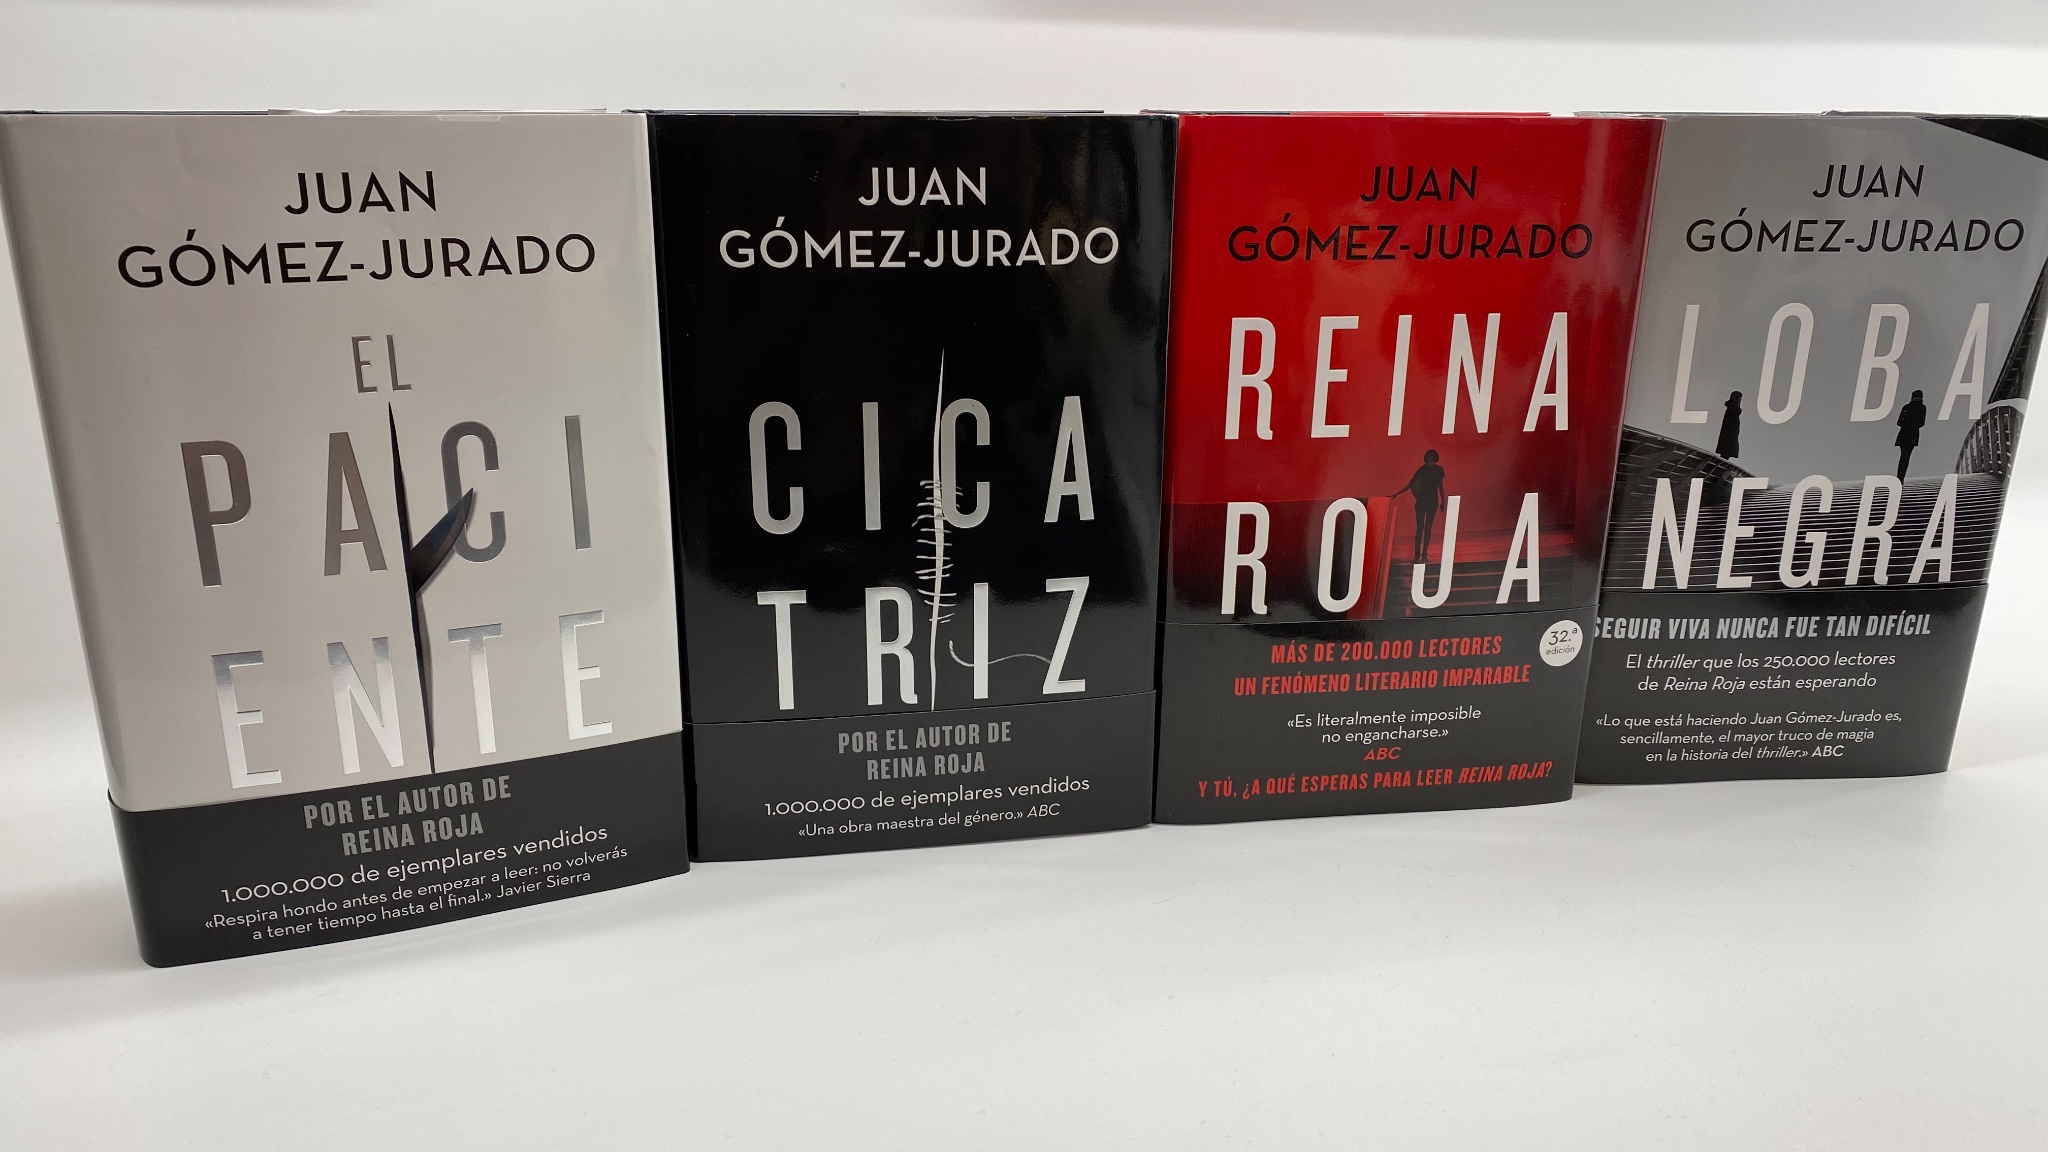 Juan Gómez-Jurado on X: Con Reina Roja a punto de su 50ª edición, Loba  Negra en la 17ª, llegan por fin las reediciones en tapa dura de El Paciente  y Cicatriz. ¿Te